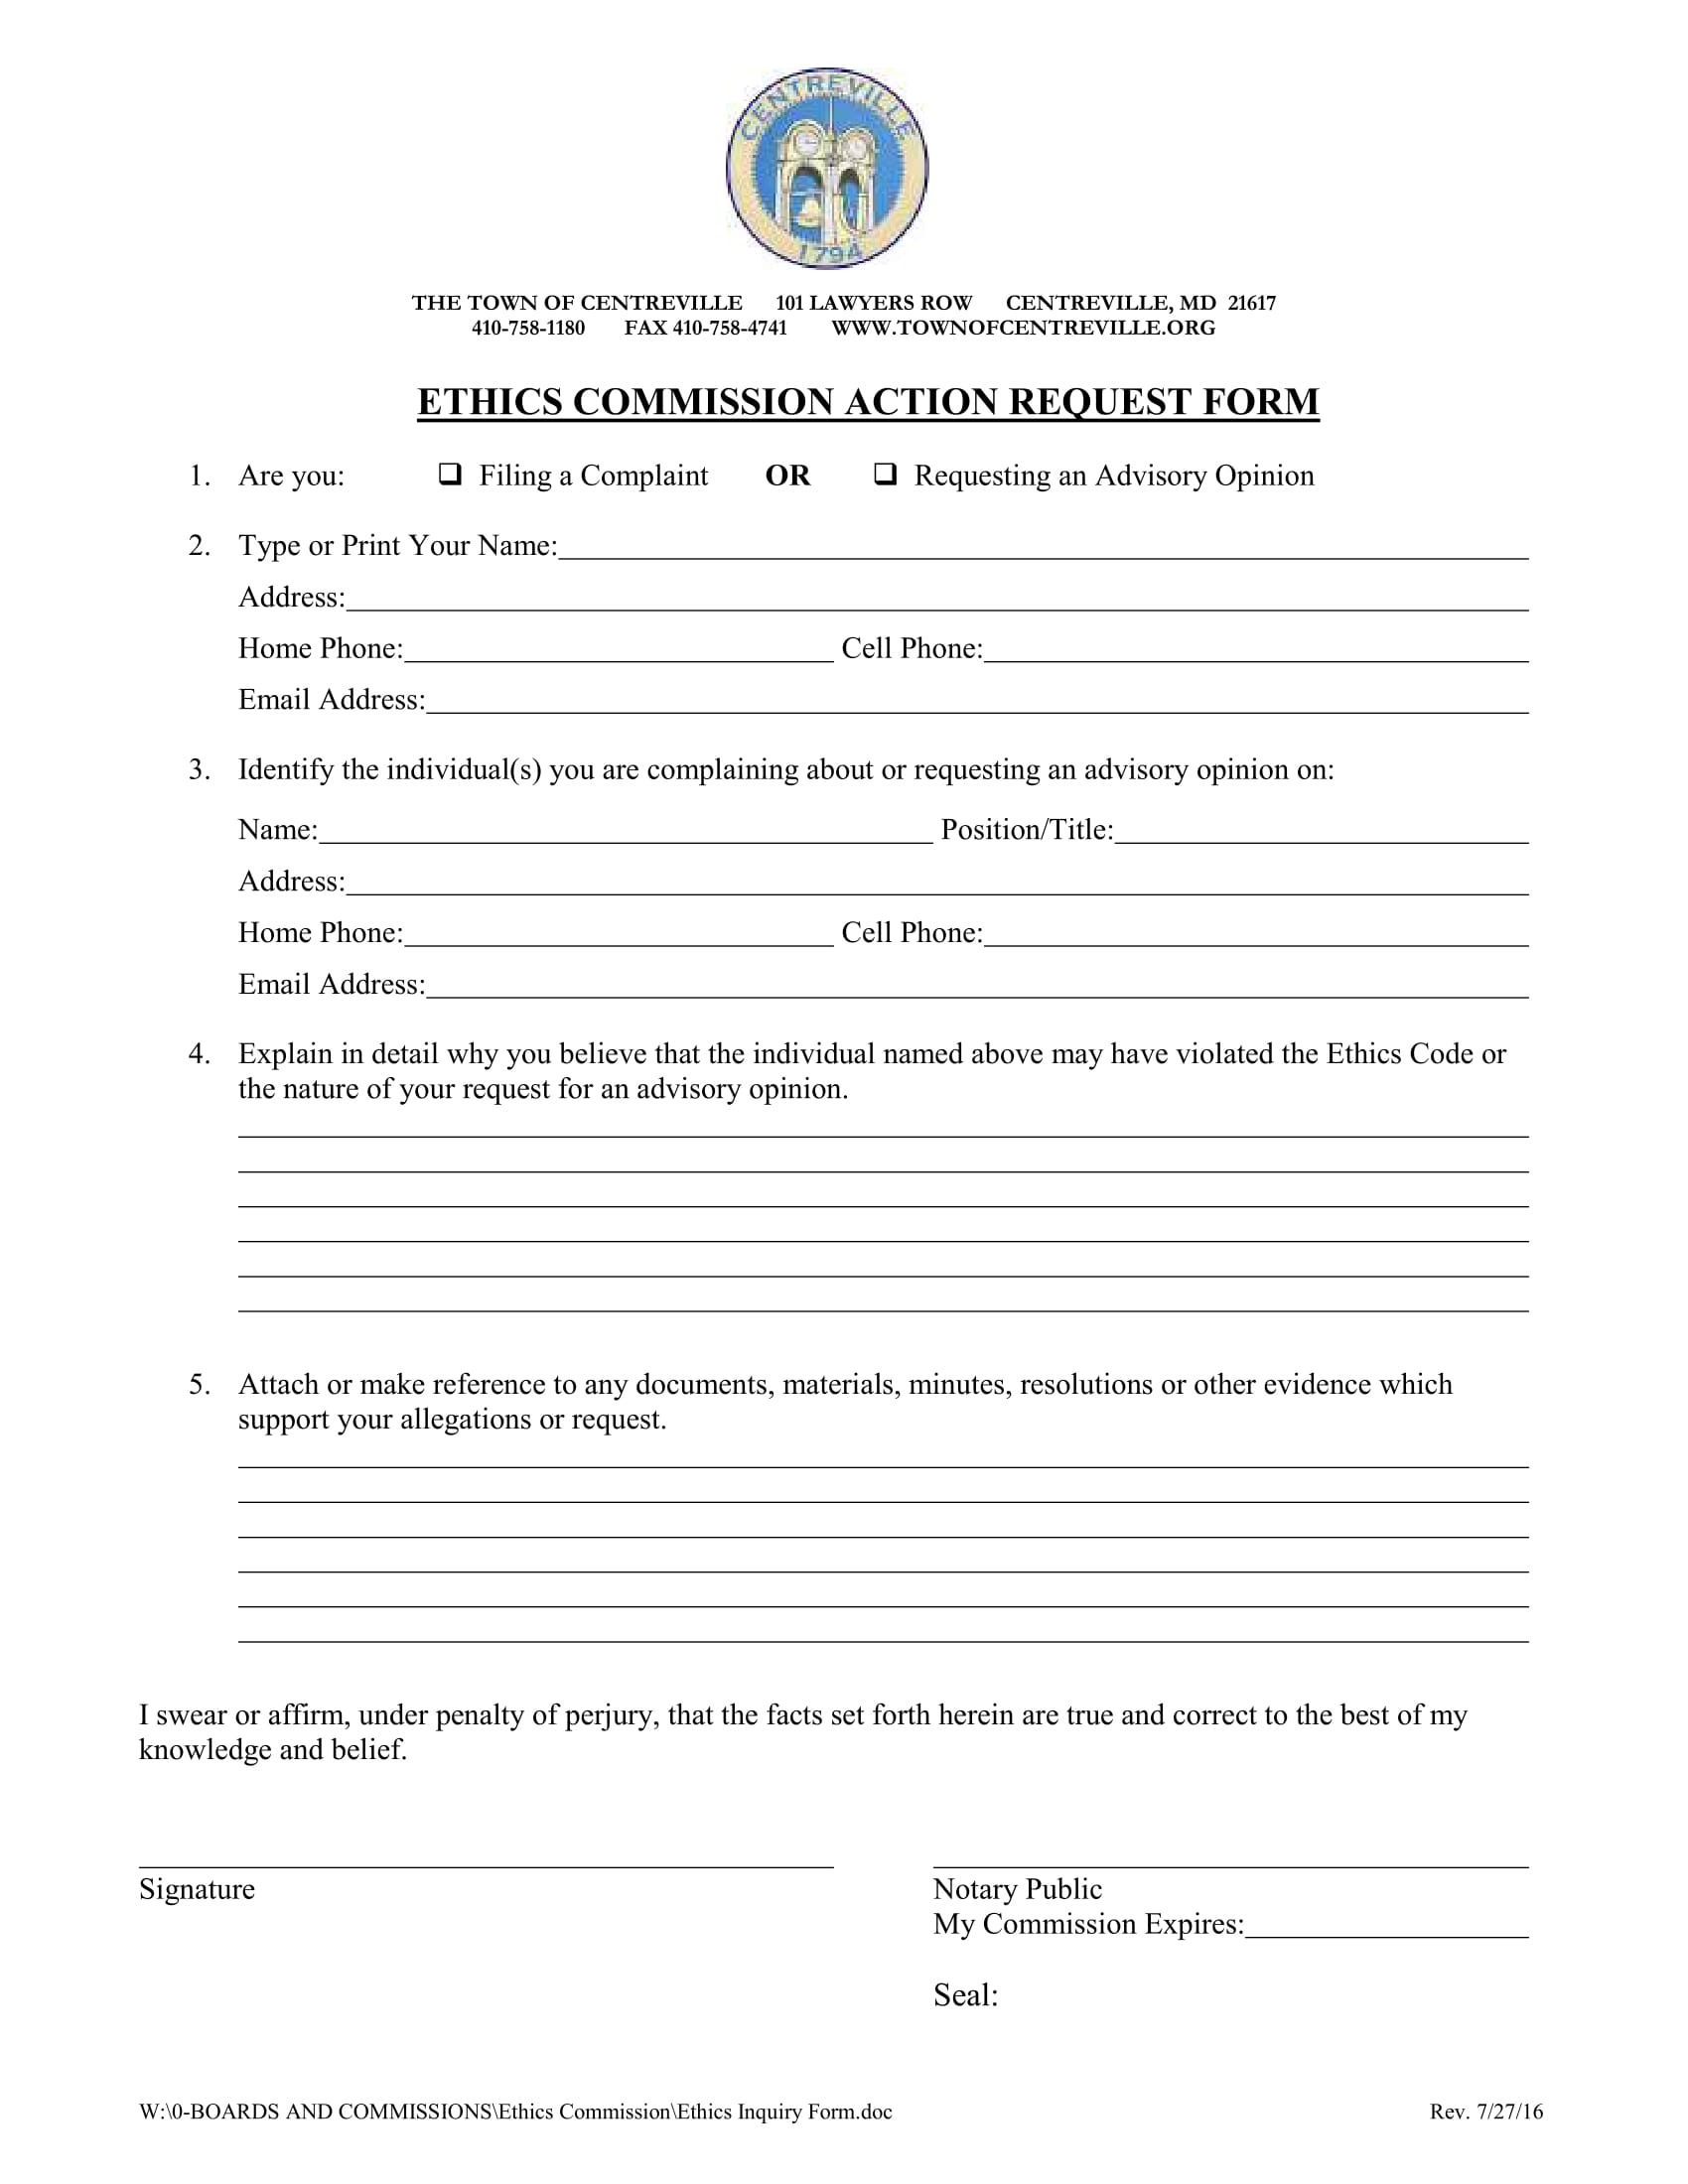 ethics commission action request form 1